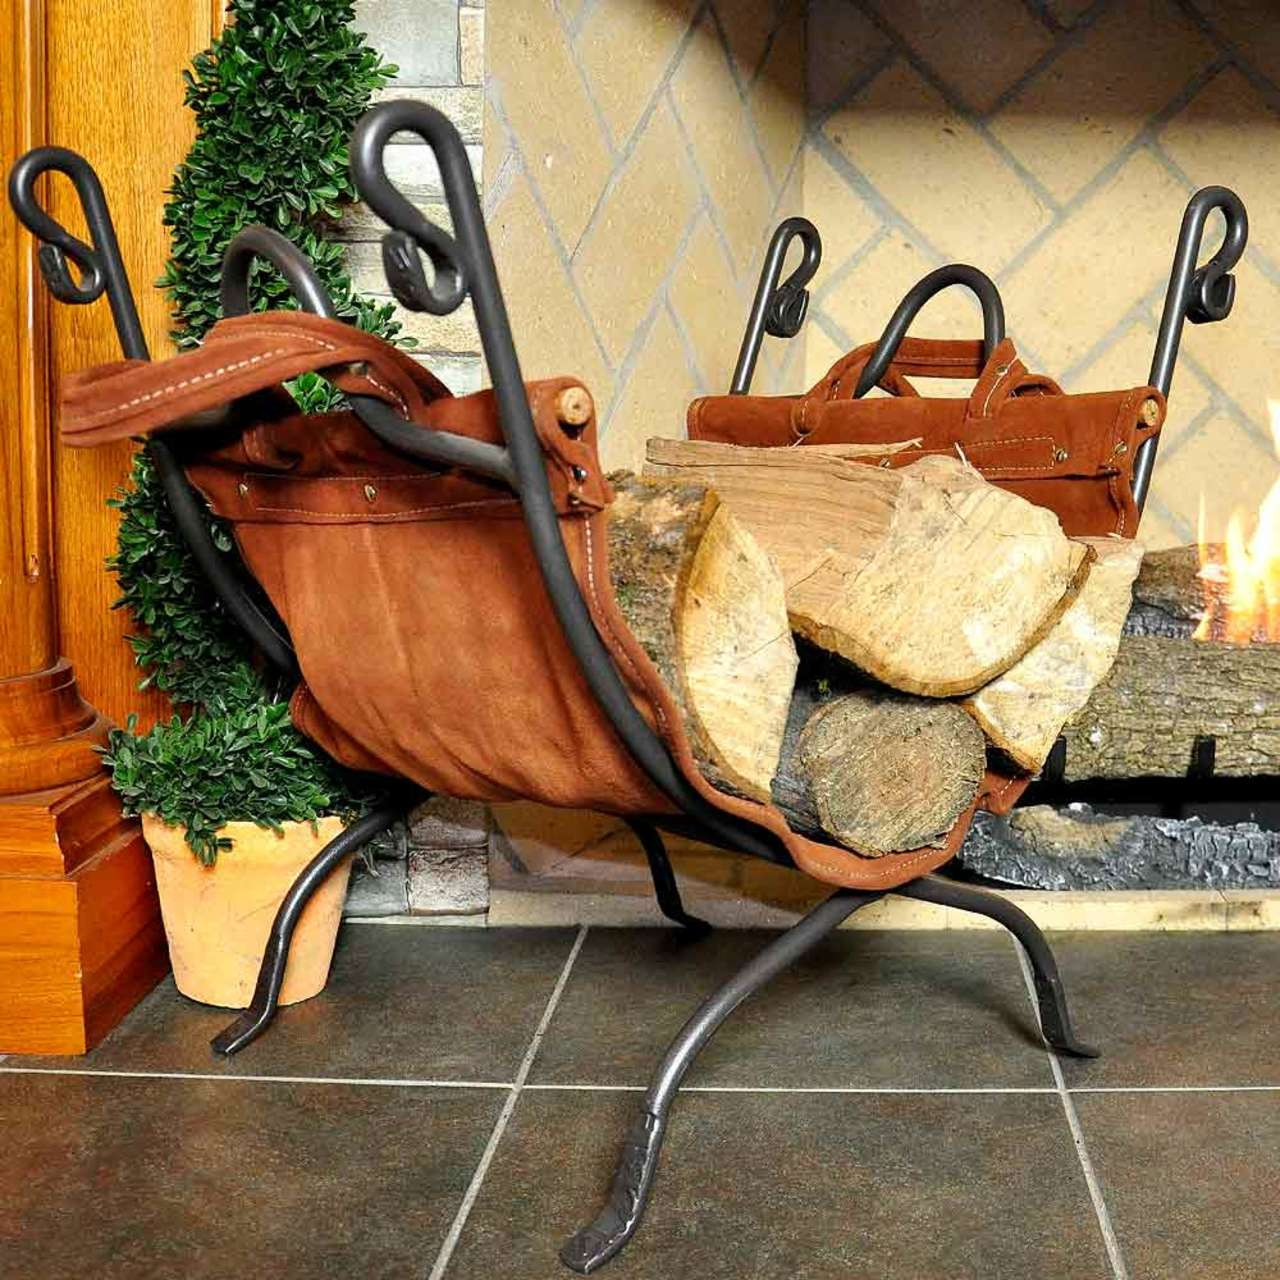 Felt Firewood Basket, Wood Carrier Holder Bag, Fireplace Wood Bag